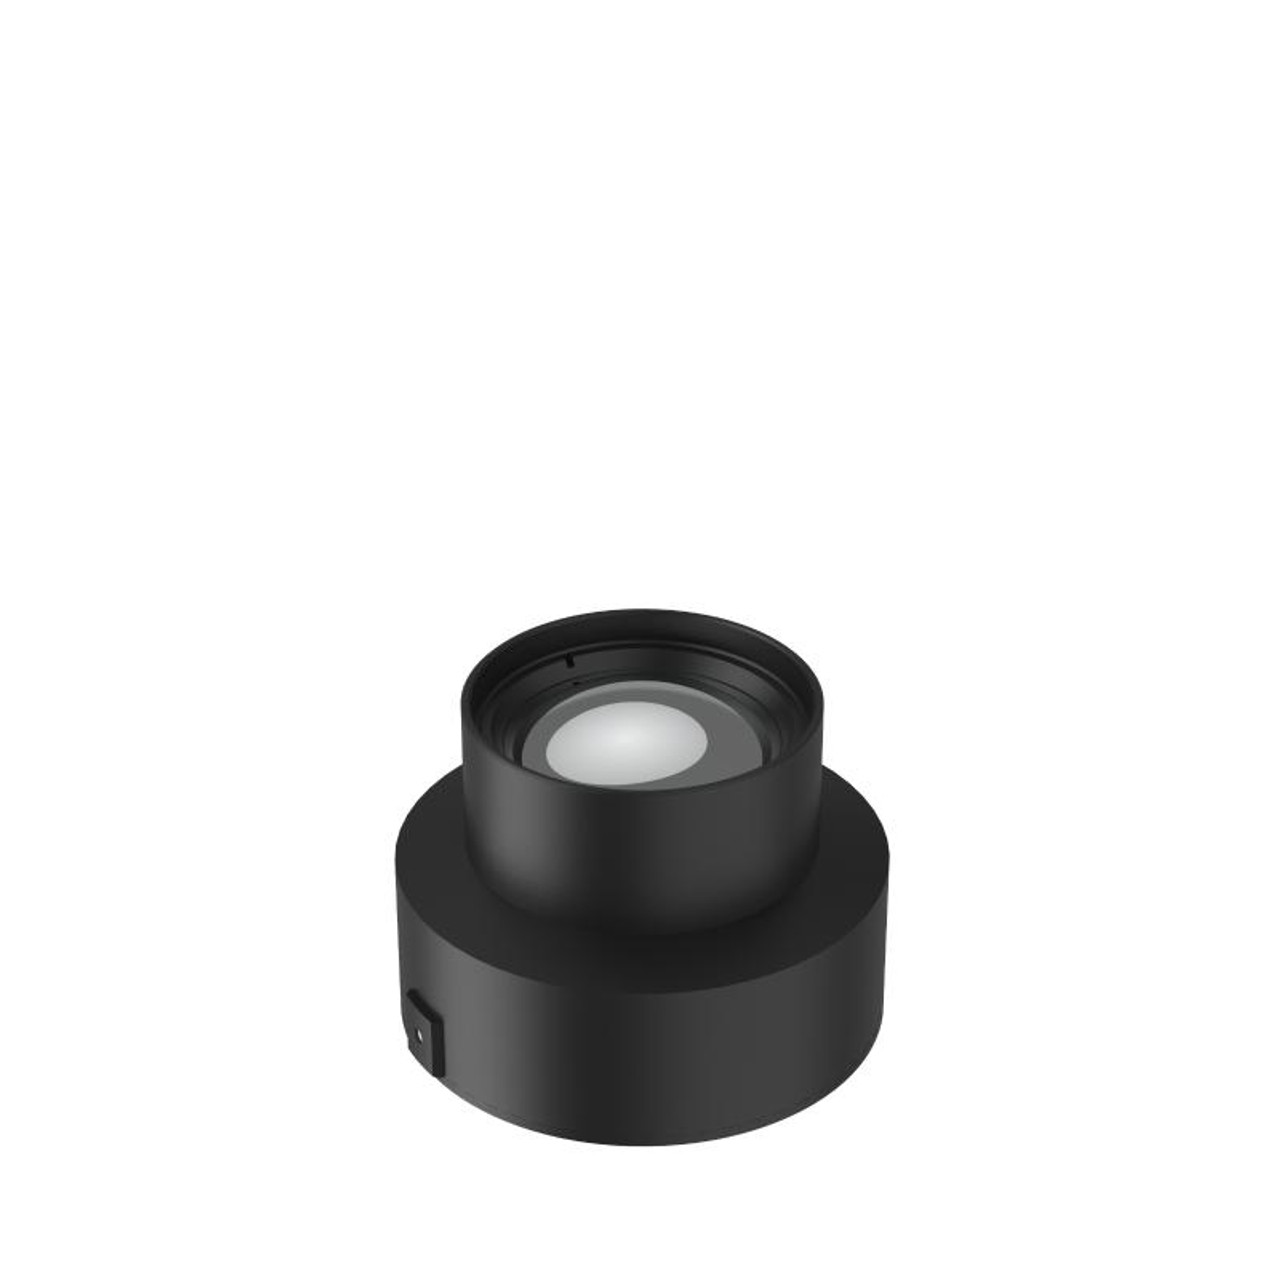 HIKMICRO G Series Lens, 0.5X Wide Angle, HM-G605-LENS